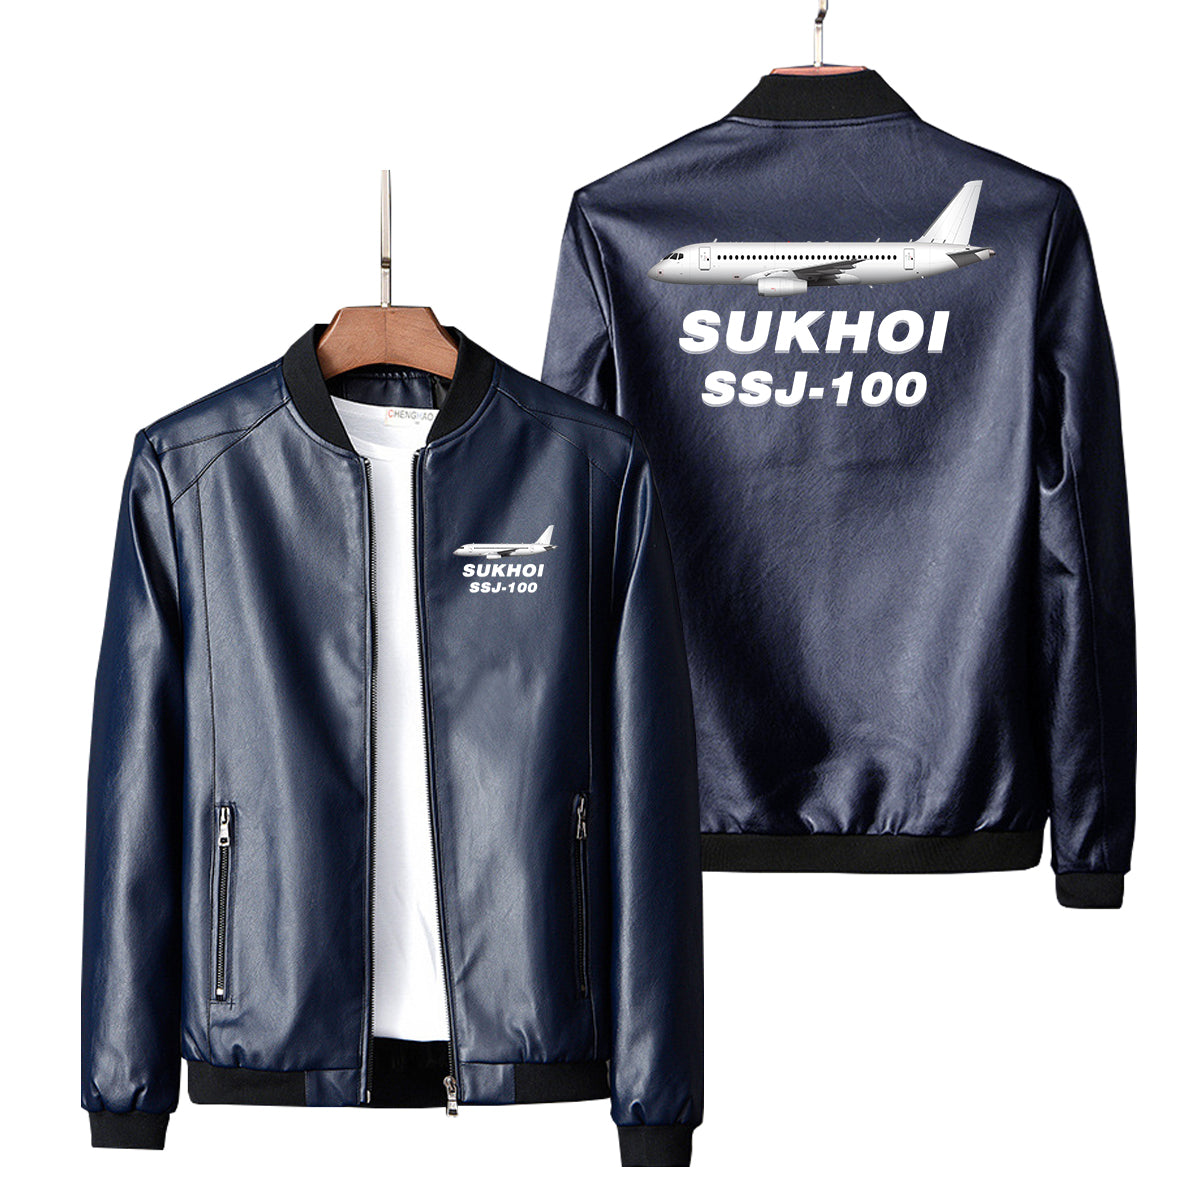 Sukhoi Superjet 100 Designed PU Leather Jackets